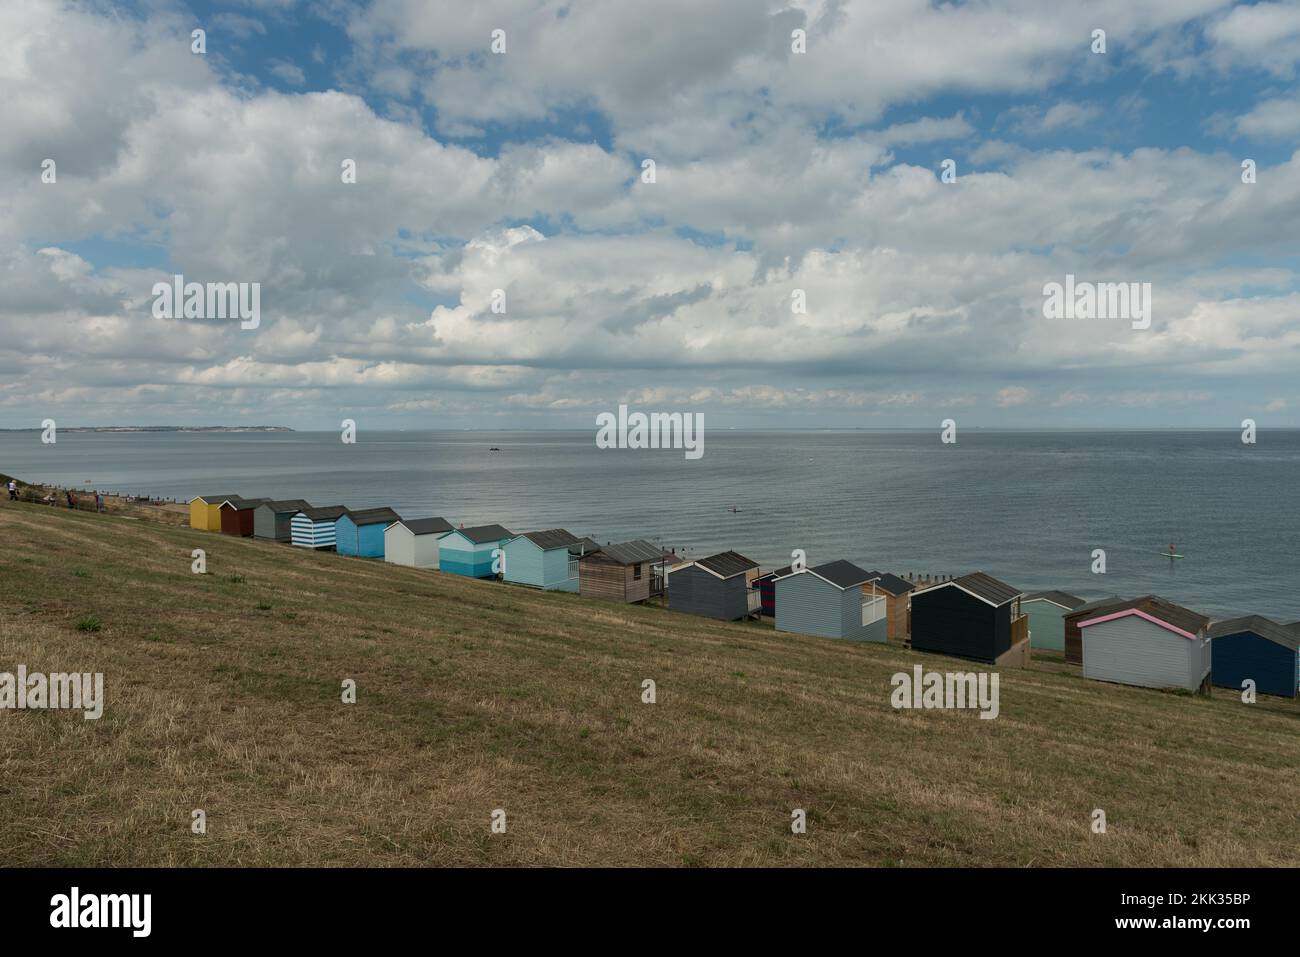 Schöne gepflegte Strandhütten an einem muscheligen Sommertag zur Hochsaison, um sich gegen den wechselnden bewölkten Himmel und das ruhige Meer zu reflektieren Stockfoto